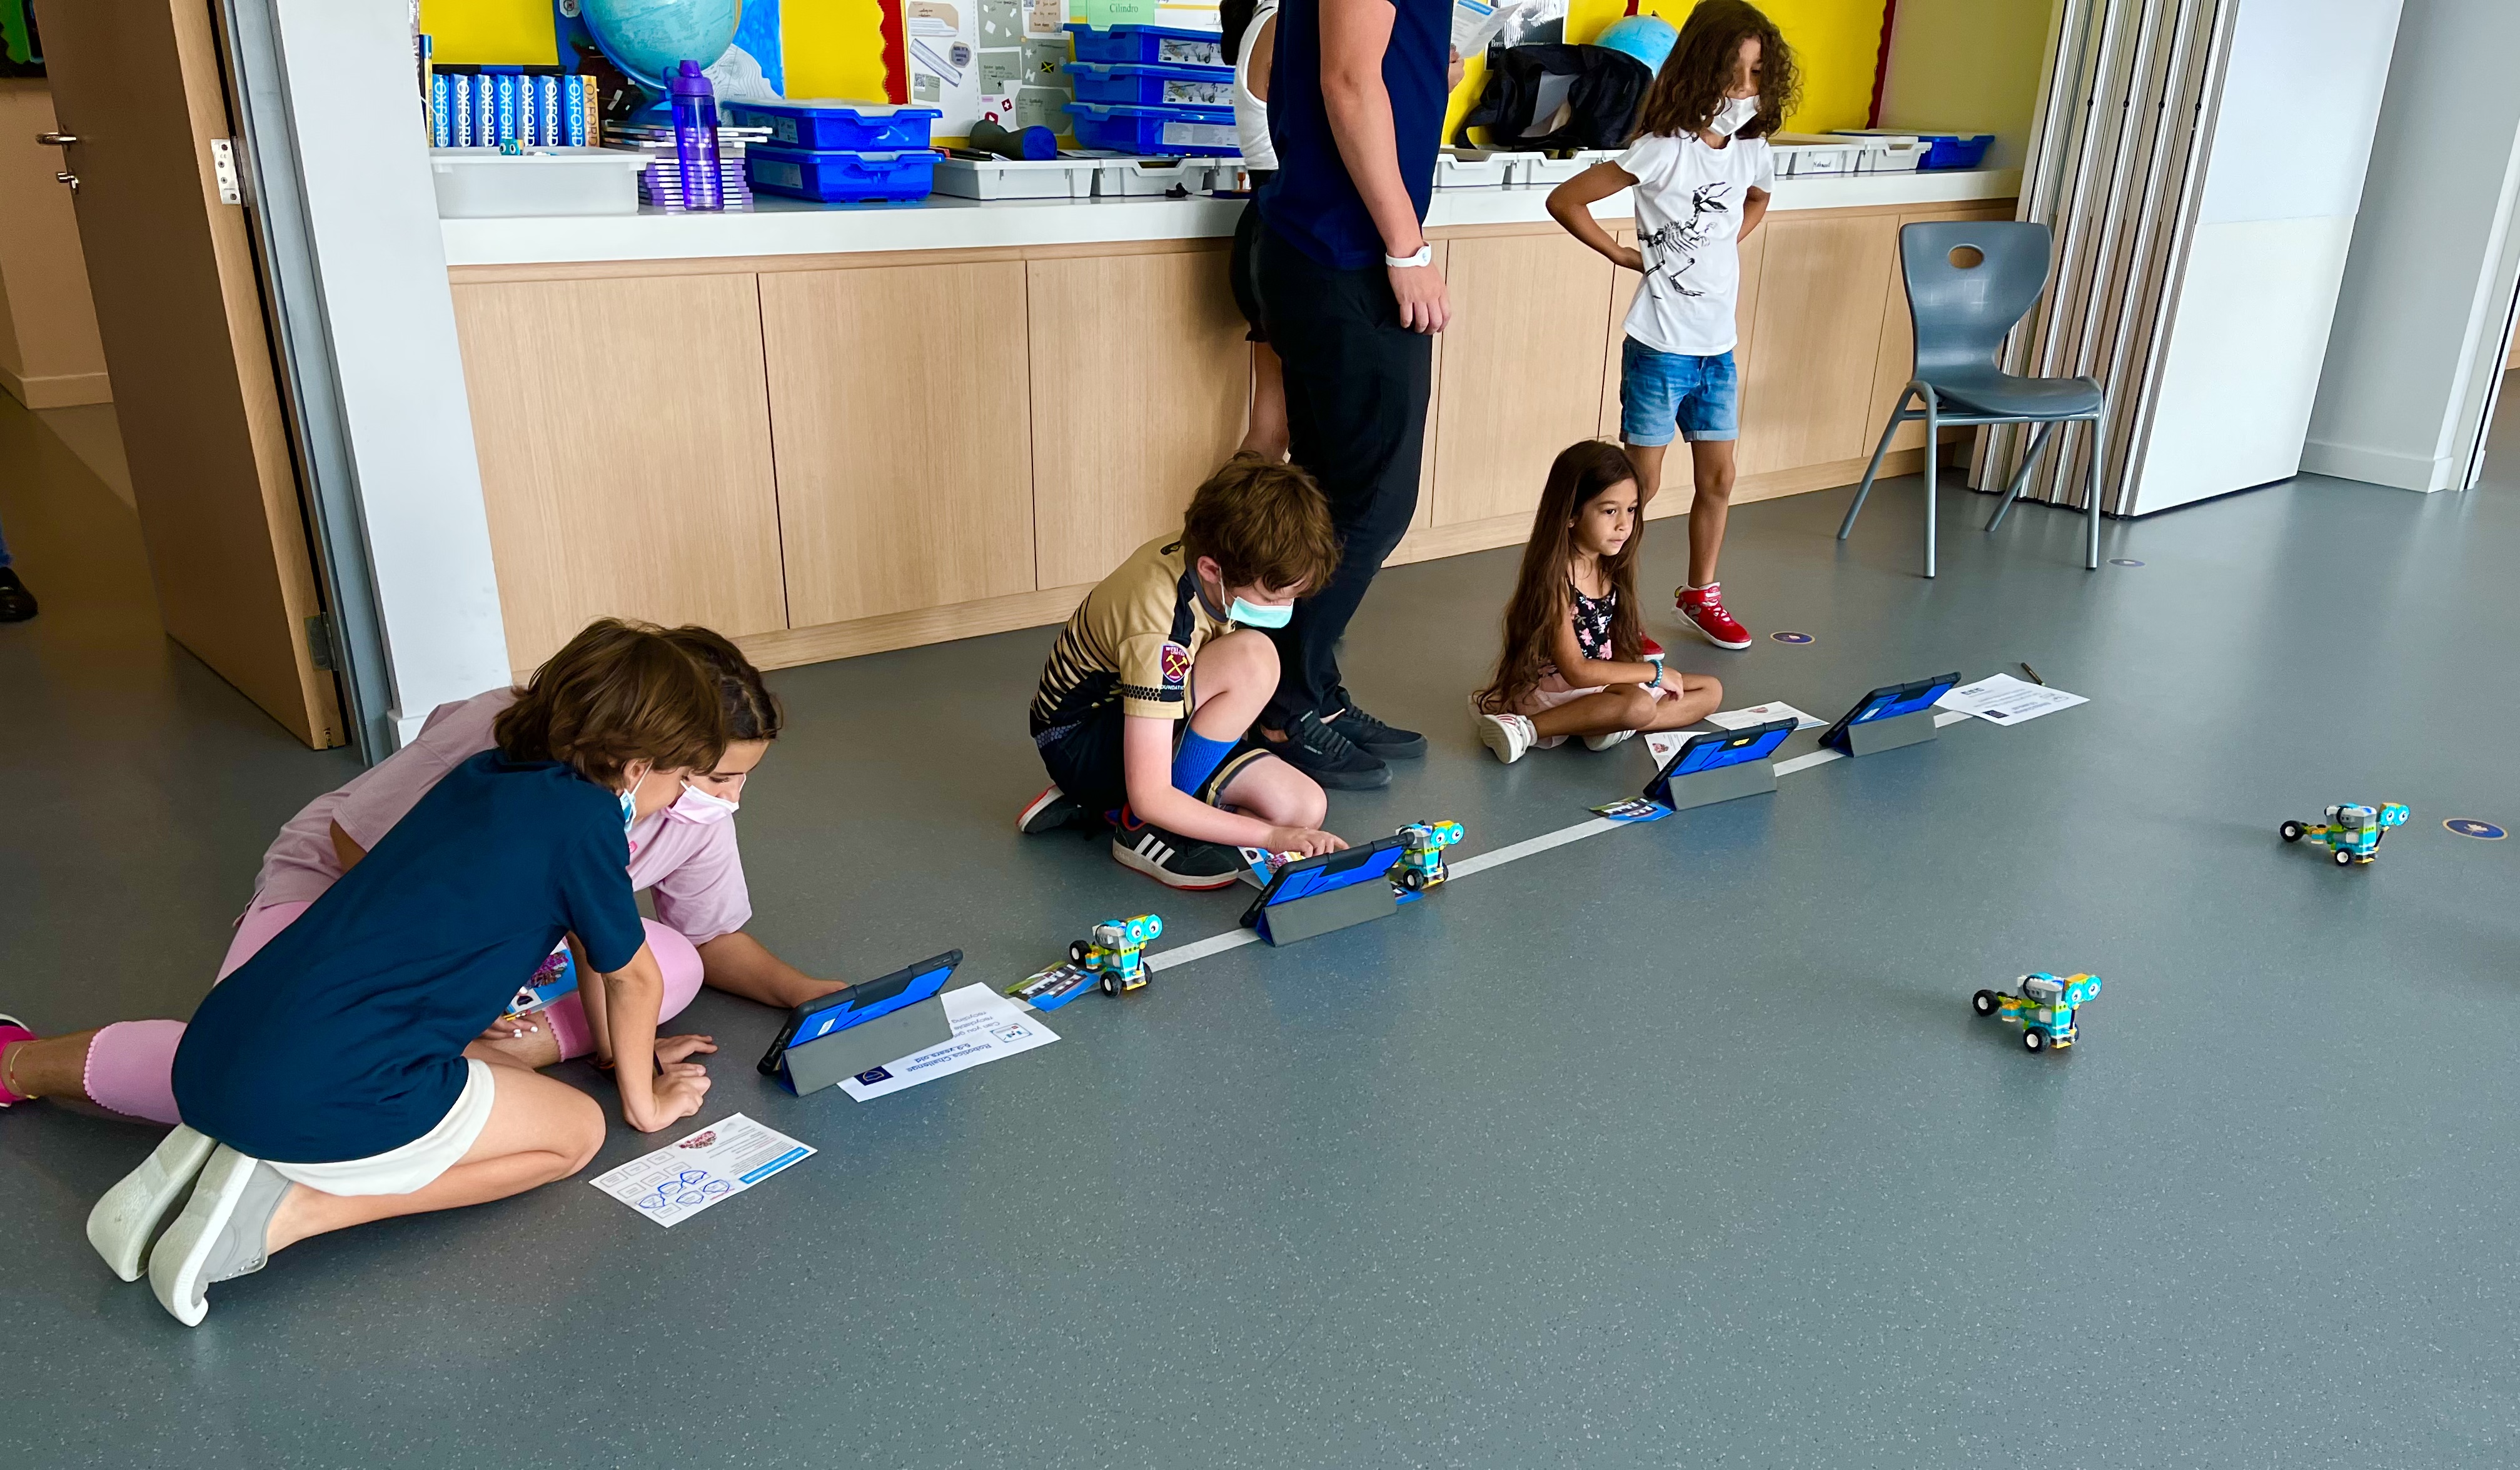 يتعلم الأطفال عن الحوسبة والروبوتات والبرمجة والتكنولوجيا في مدرسة أركاديا في دبي كجزء من مهرجان المدارس